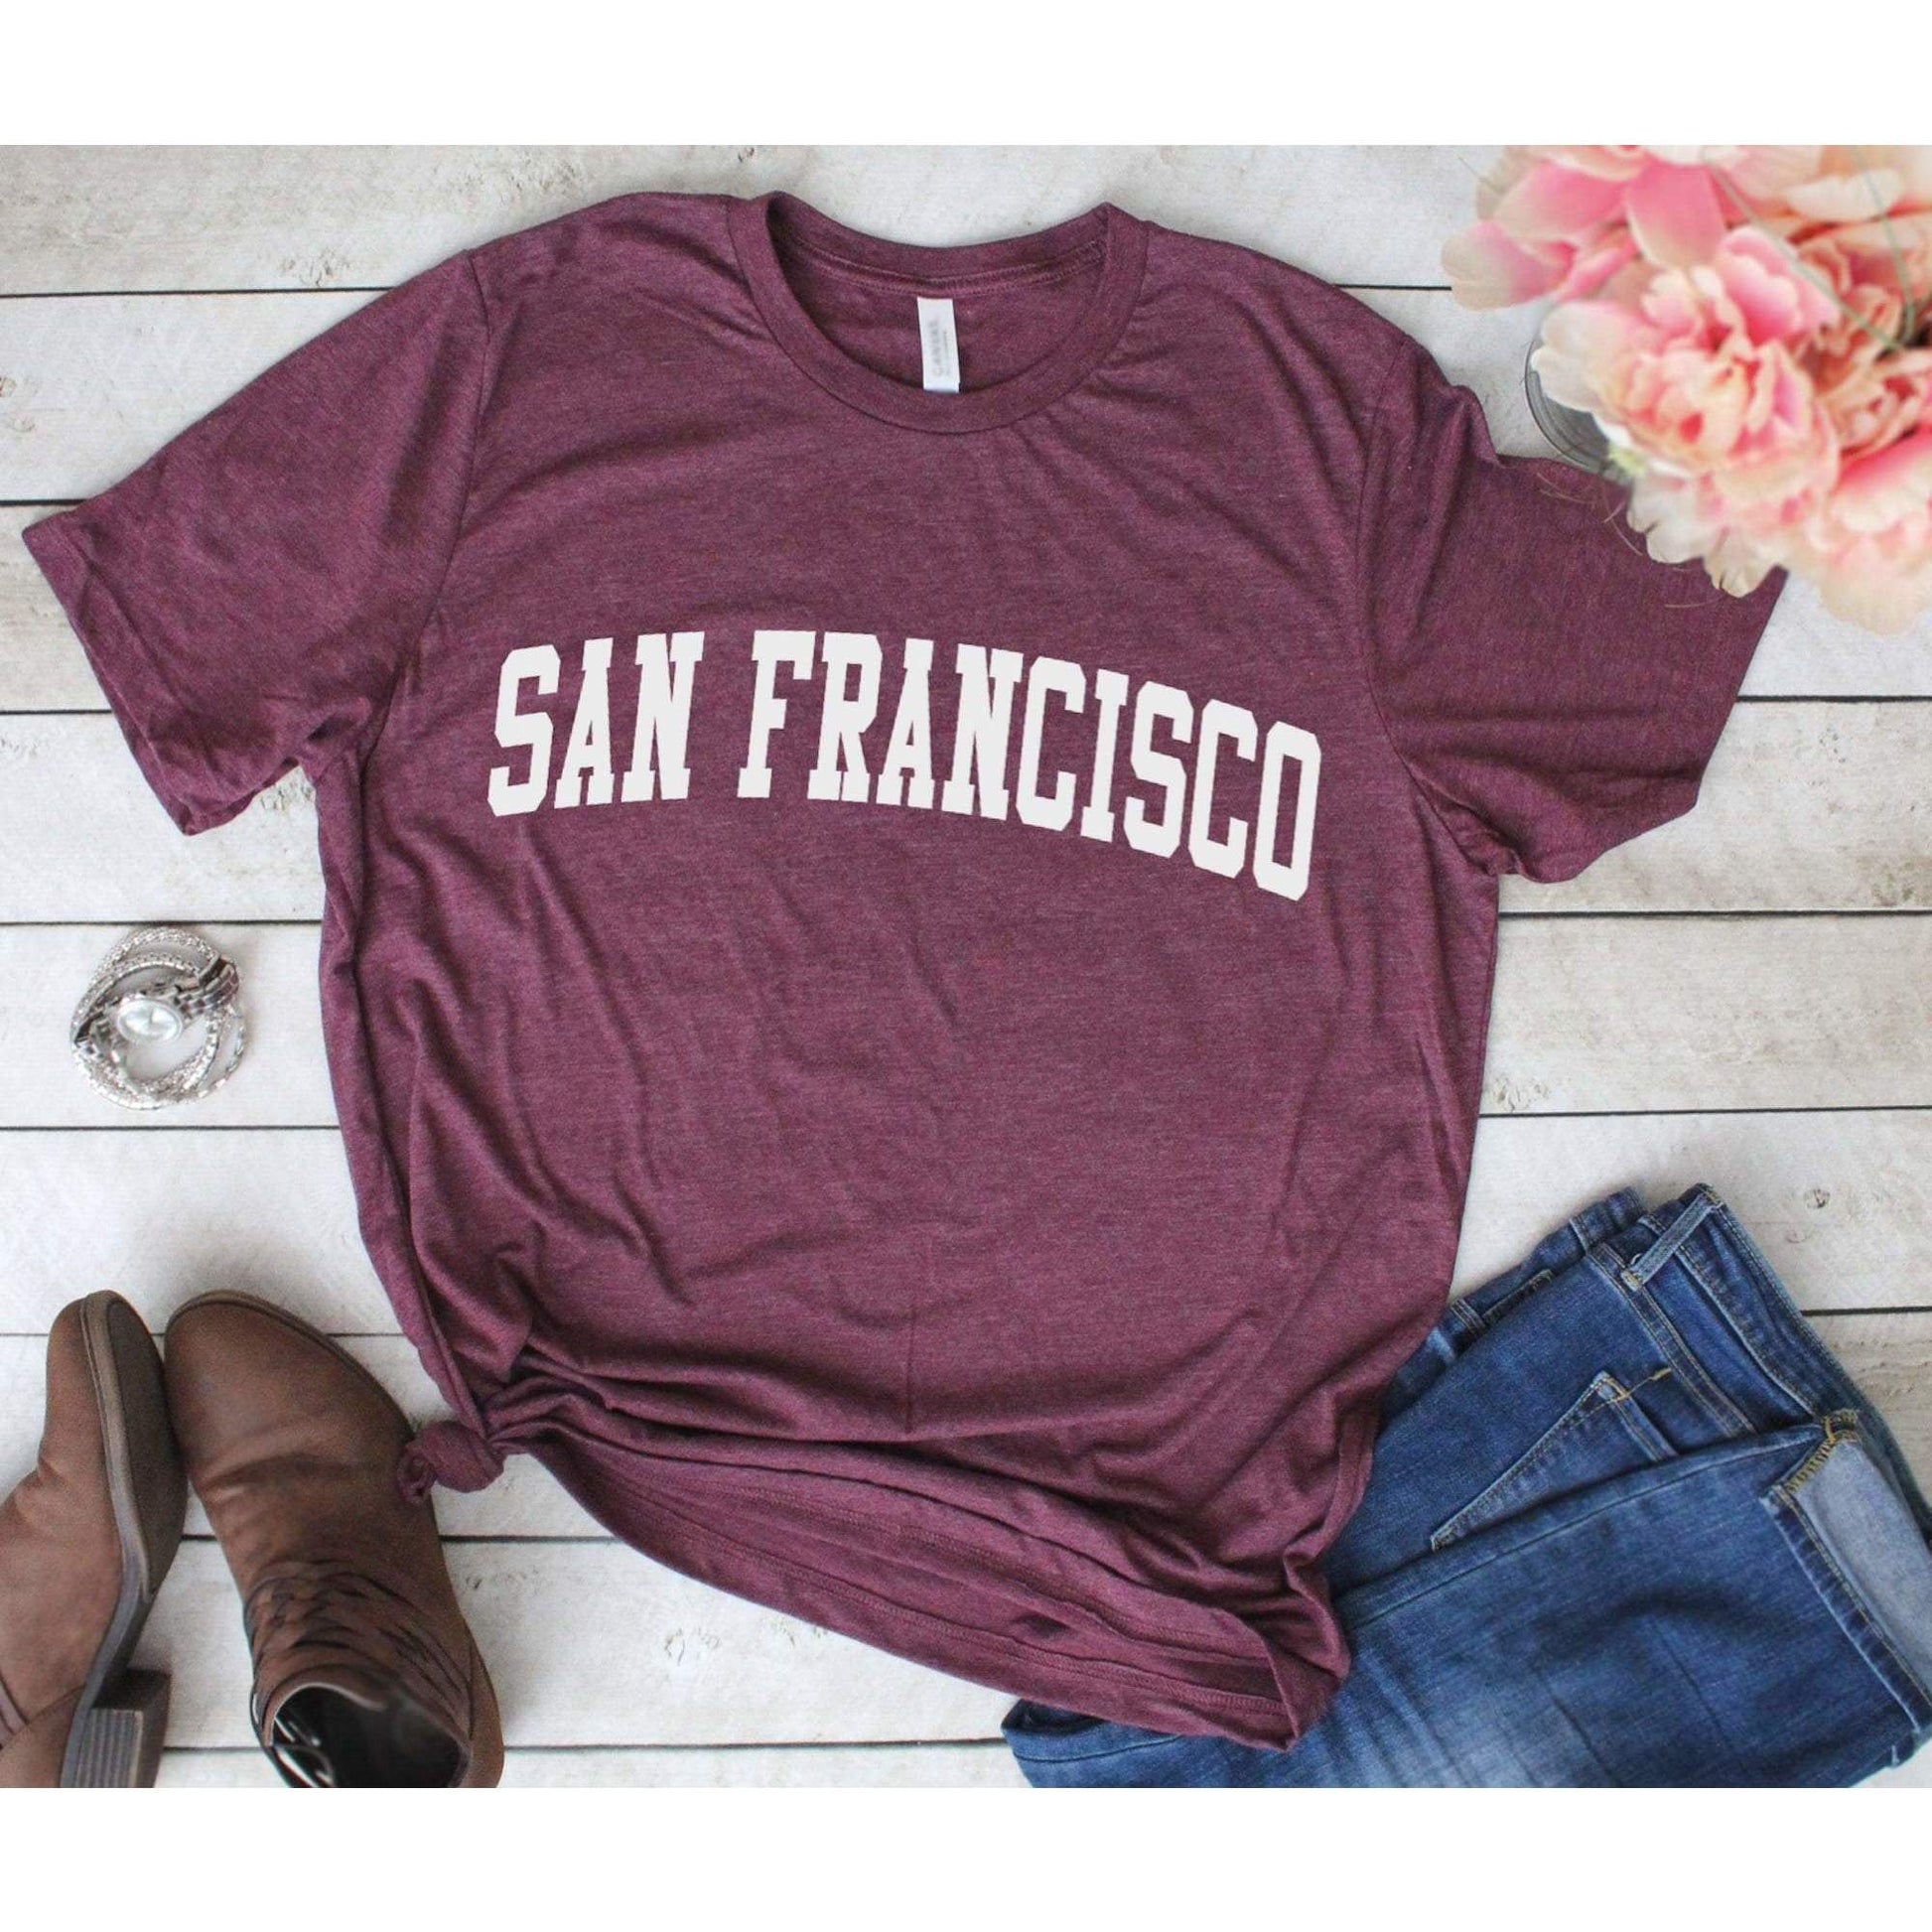 San Francisco Shirt - San Francisco T-Shirt - San Francisco Trip Shirt - San Francisco - Bay Area Shirt - Unisex Soft Shirt